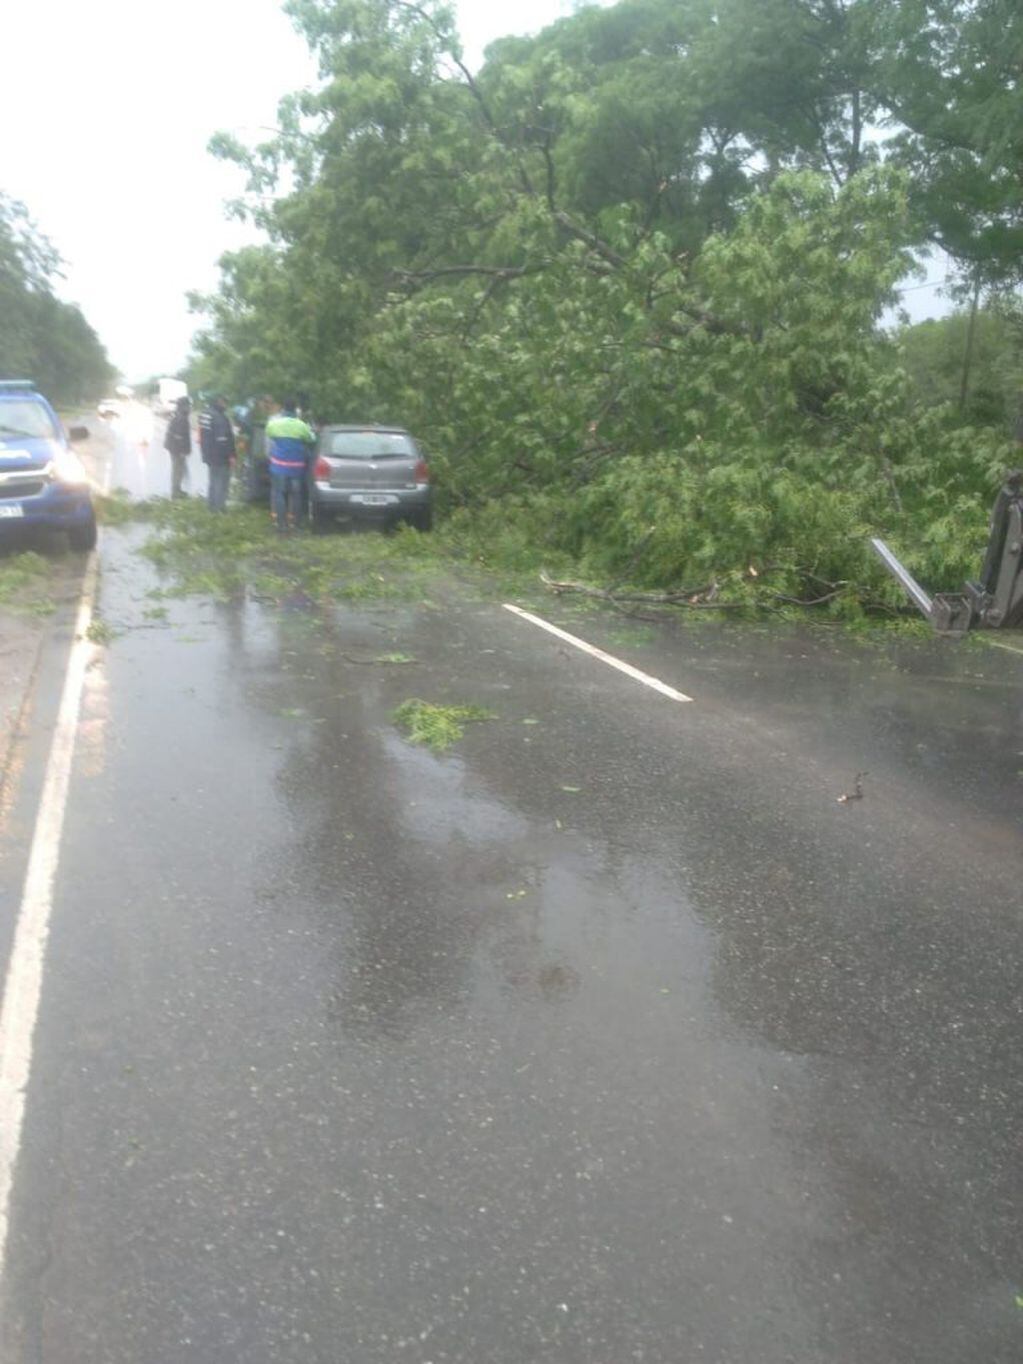 Anisacate: se cayó un árbol en la ruta 5